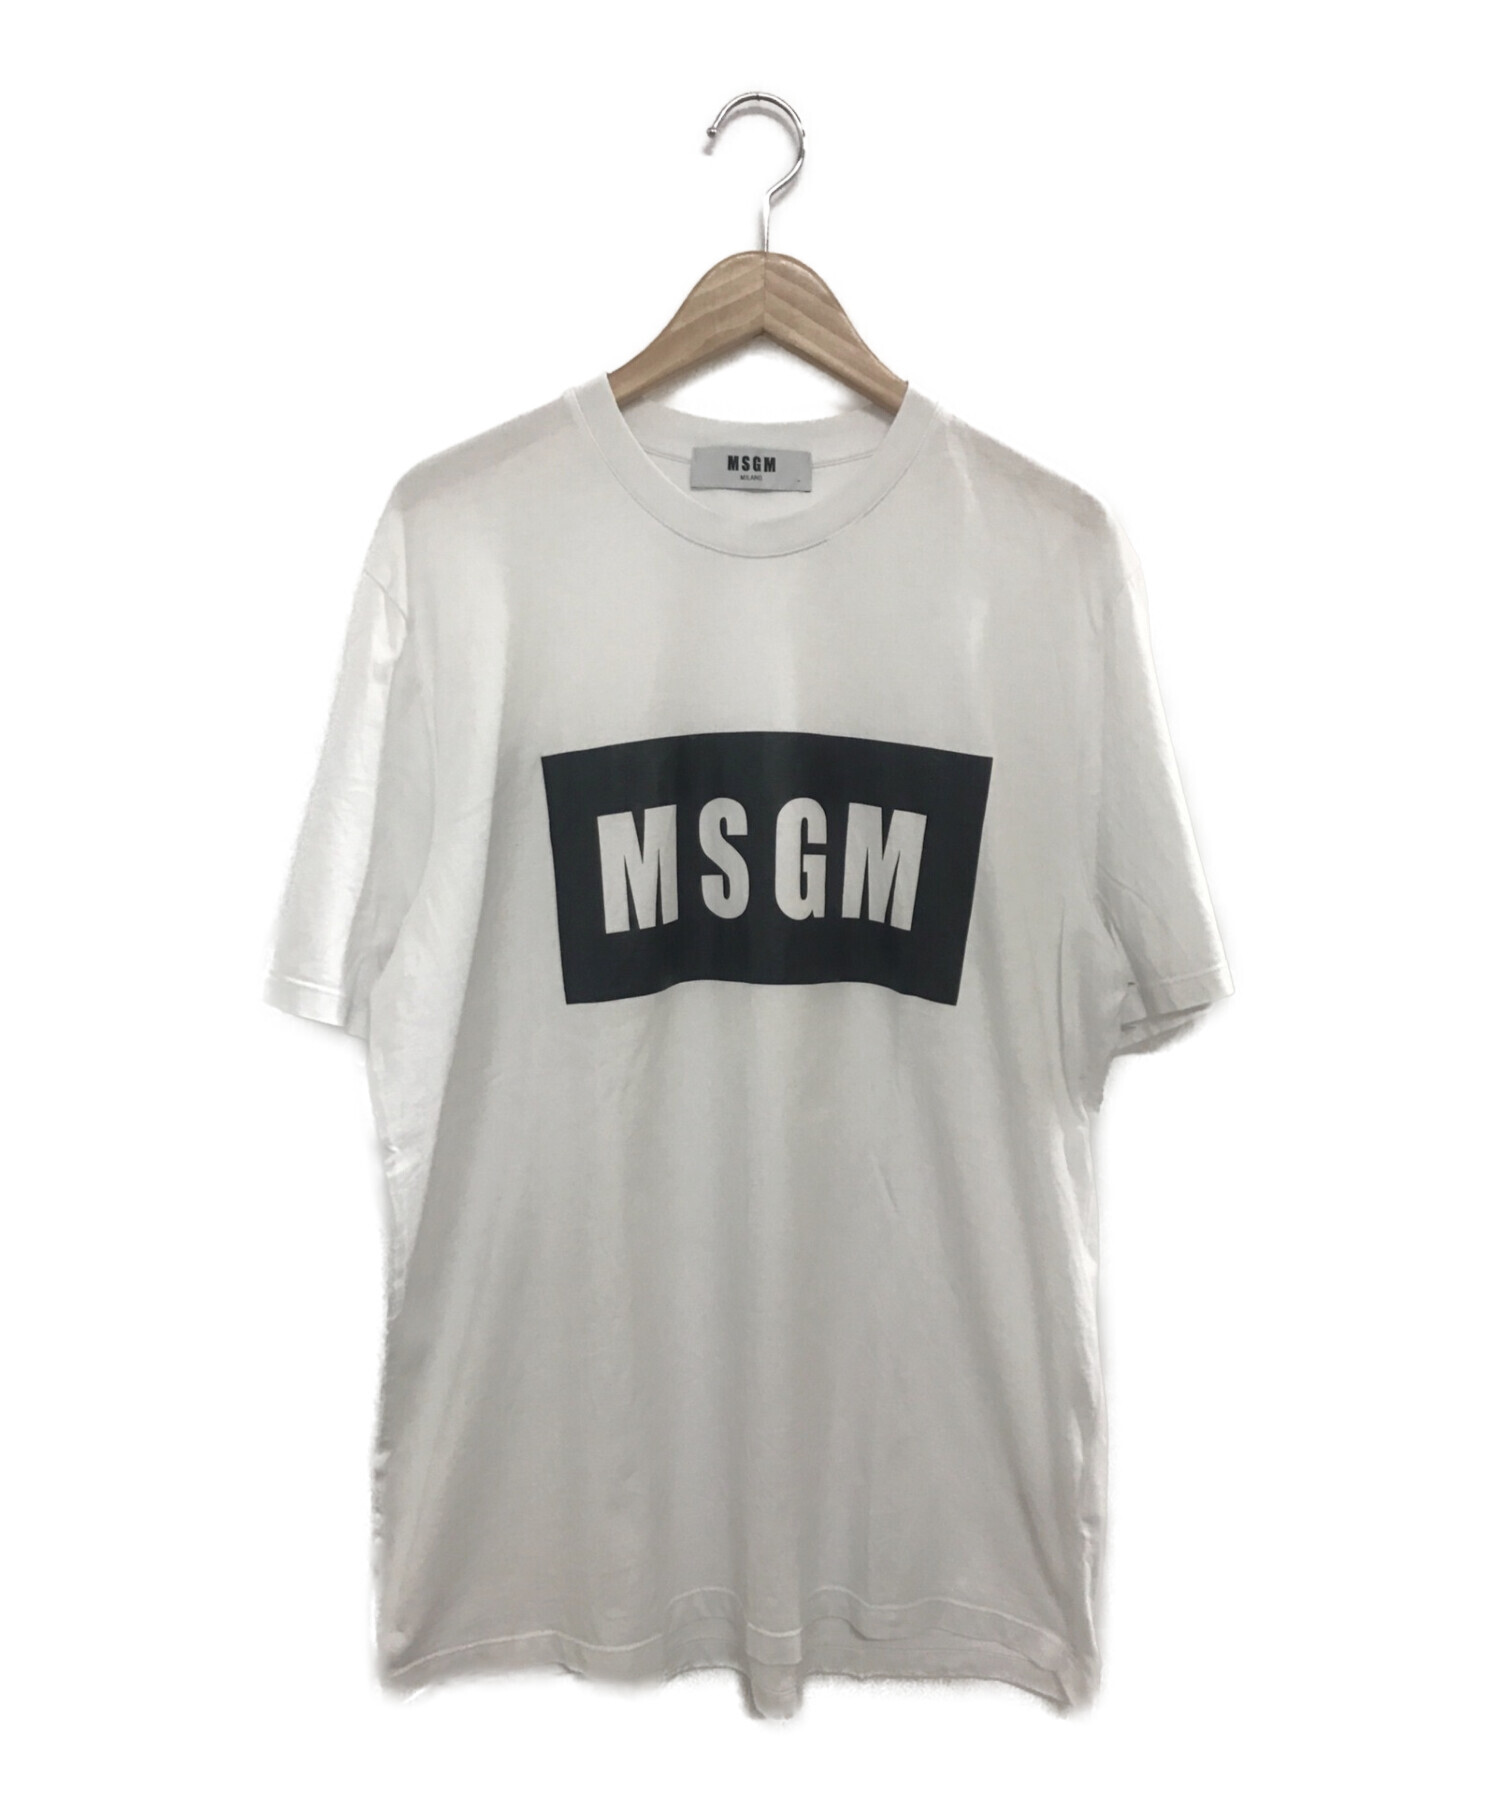 MSGM (エムエスジーエム) ロゴプリントTシャツ ホワイト サイズ:L